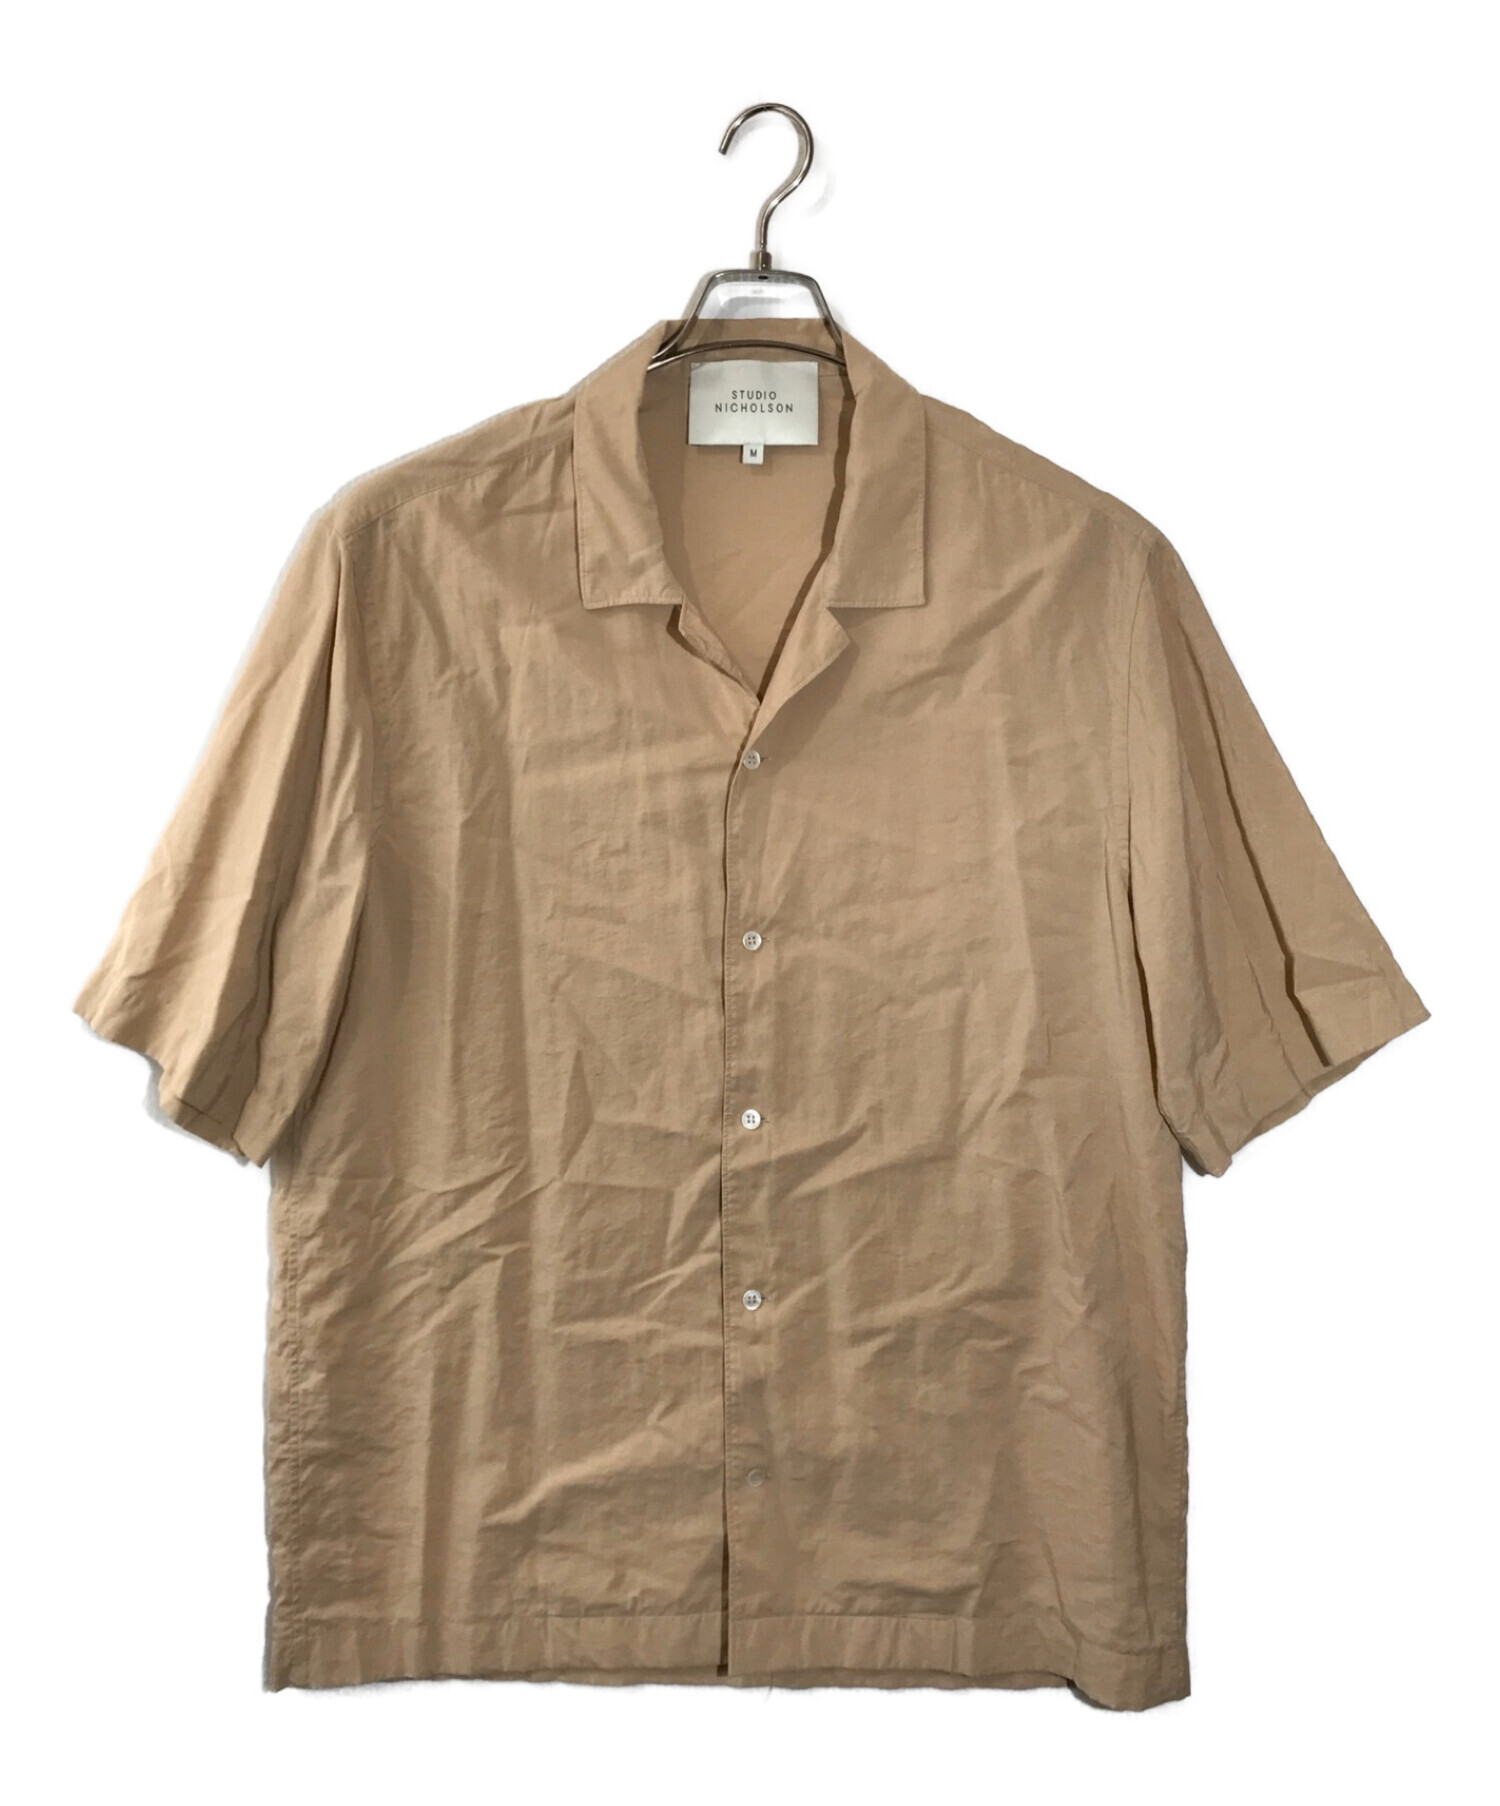 スタジオニコルソン オープンカラーシャツ襟オープンカラー - シャツ